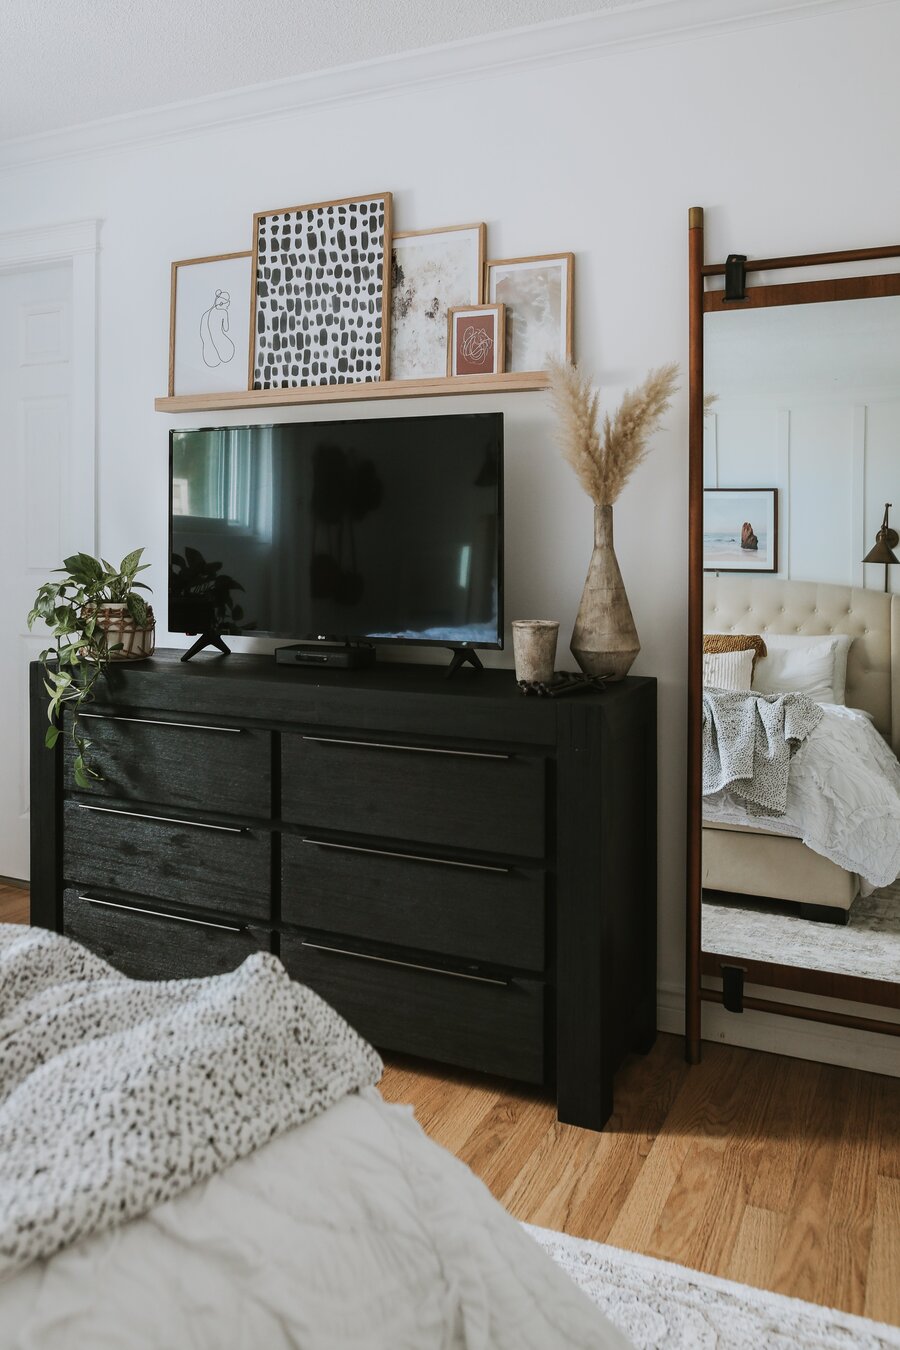 Dormitorio con cajonera de madera negra. Sobre ella el televisor y adornos con plantas. En el muro, una repisa flotante con varios cuadros apoyados, de diferentes tamaños. Al costado, un gran espejo con marco de madera.